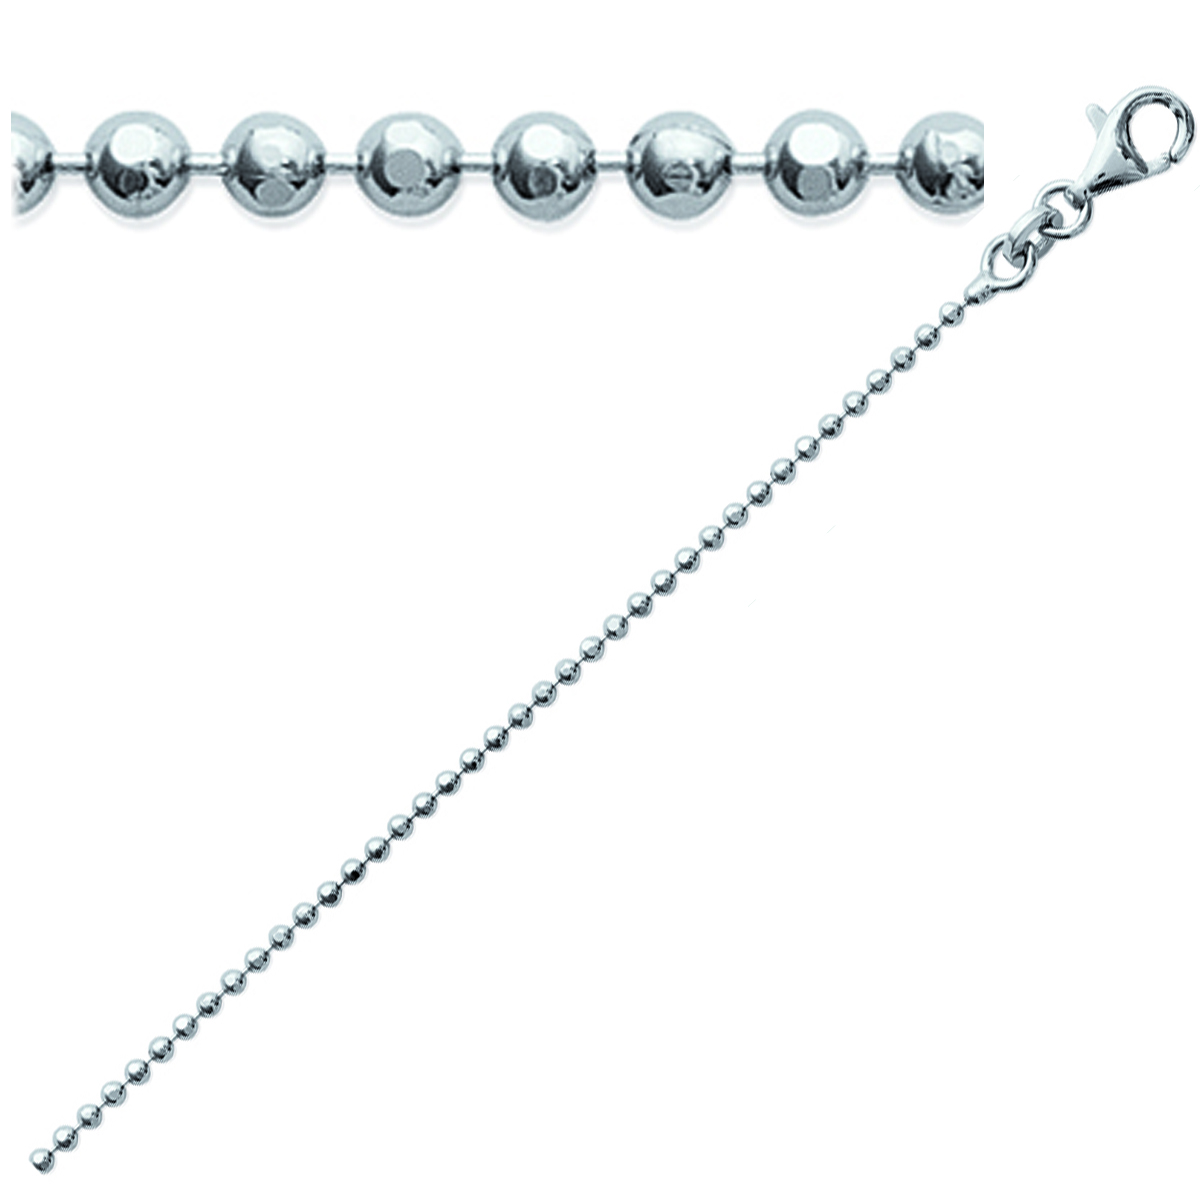 Chaine Argent \'Micro-Billes\' argenté (rhodié) - 40 cm 1 mm - [K3685]